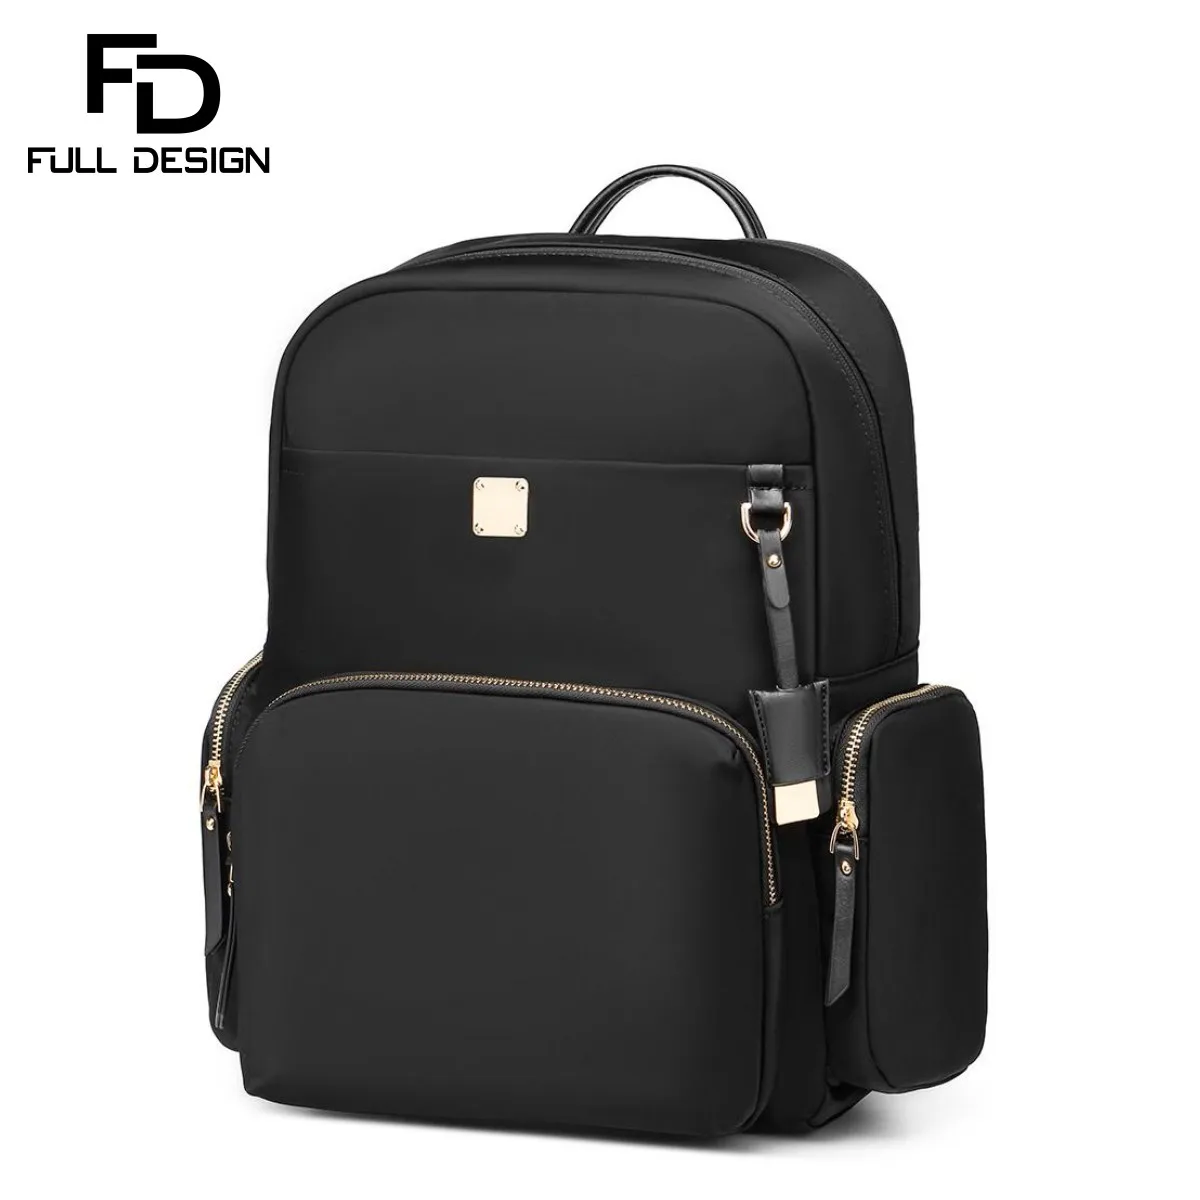 FULL DESIGN Female Backpack 14 Inch Backpack Laptop Bag Business Office Bag Waterproof Bag School Backpacks Rucksack School Bags